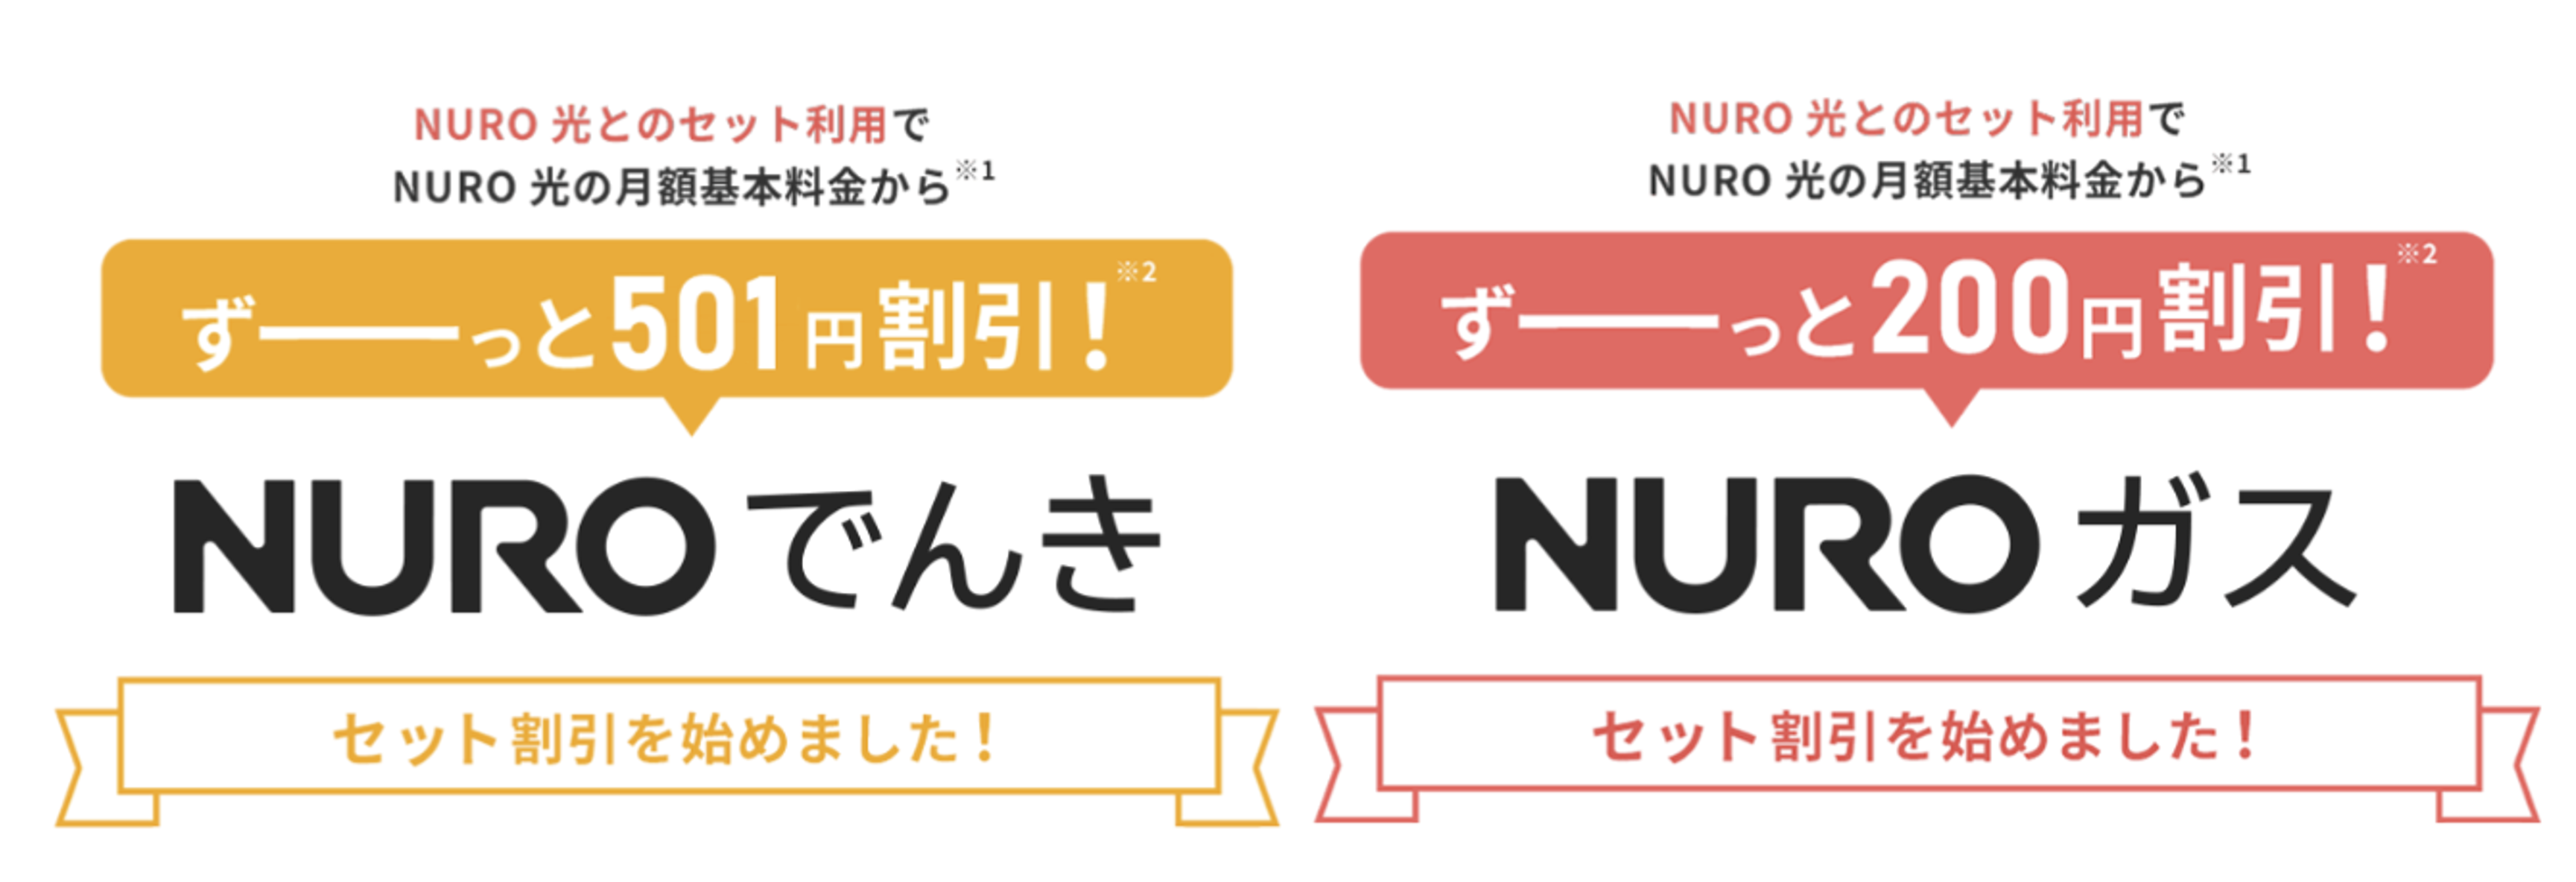 NUROでんき・NUROガス